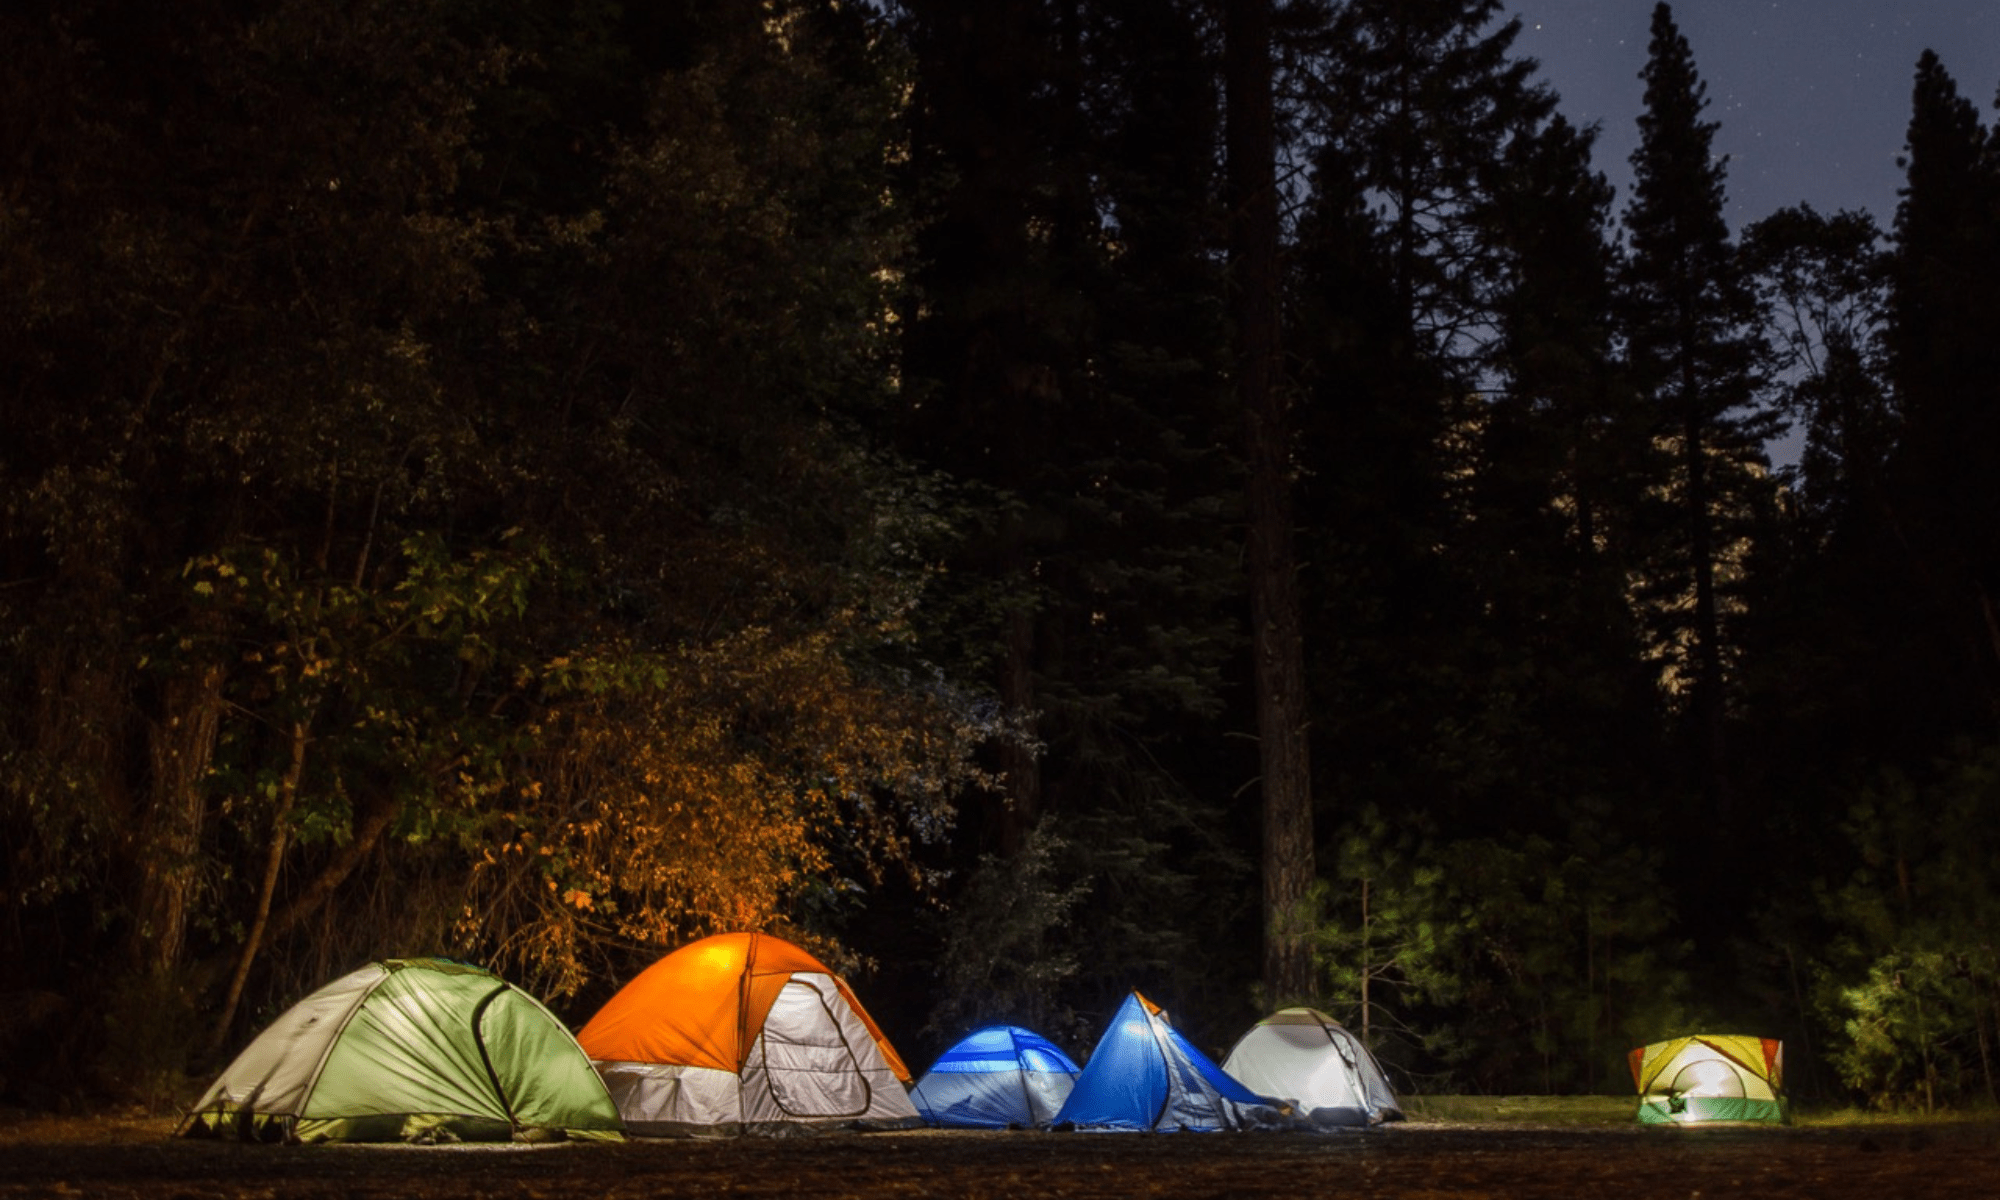 Campingausrüstung mieten: Alles für dein Abenteuer finden!